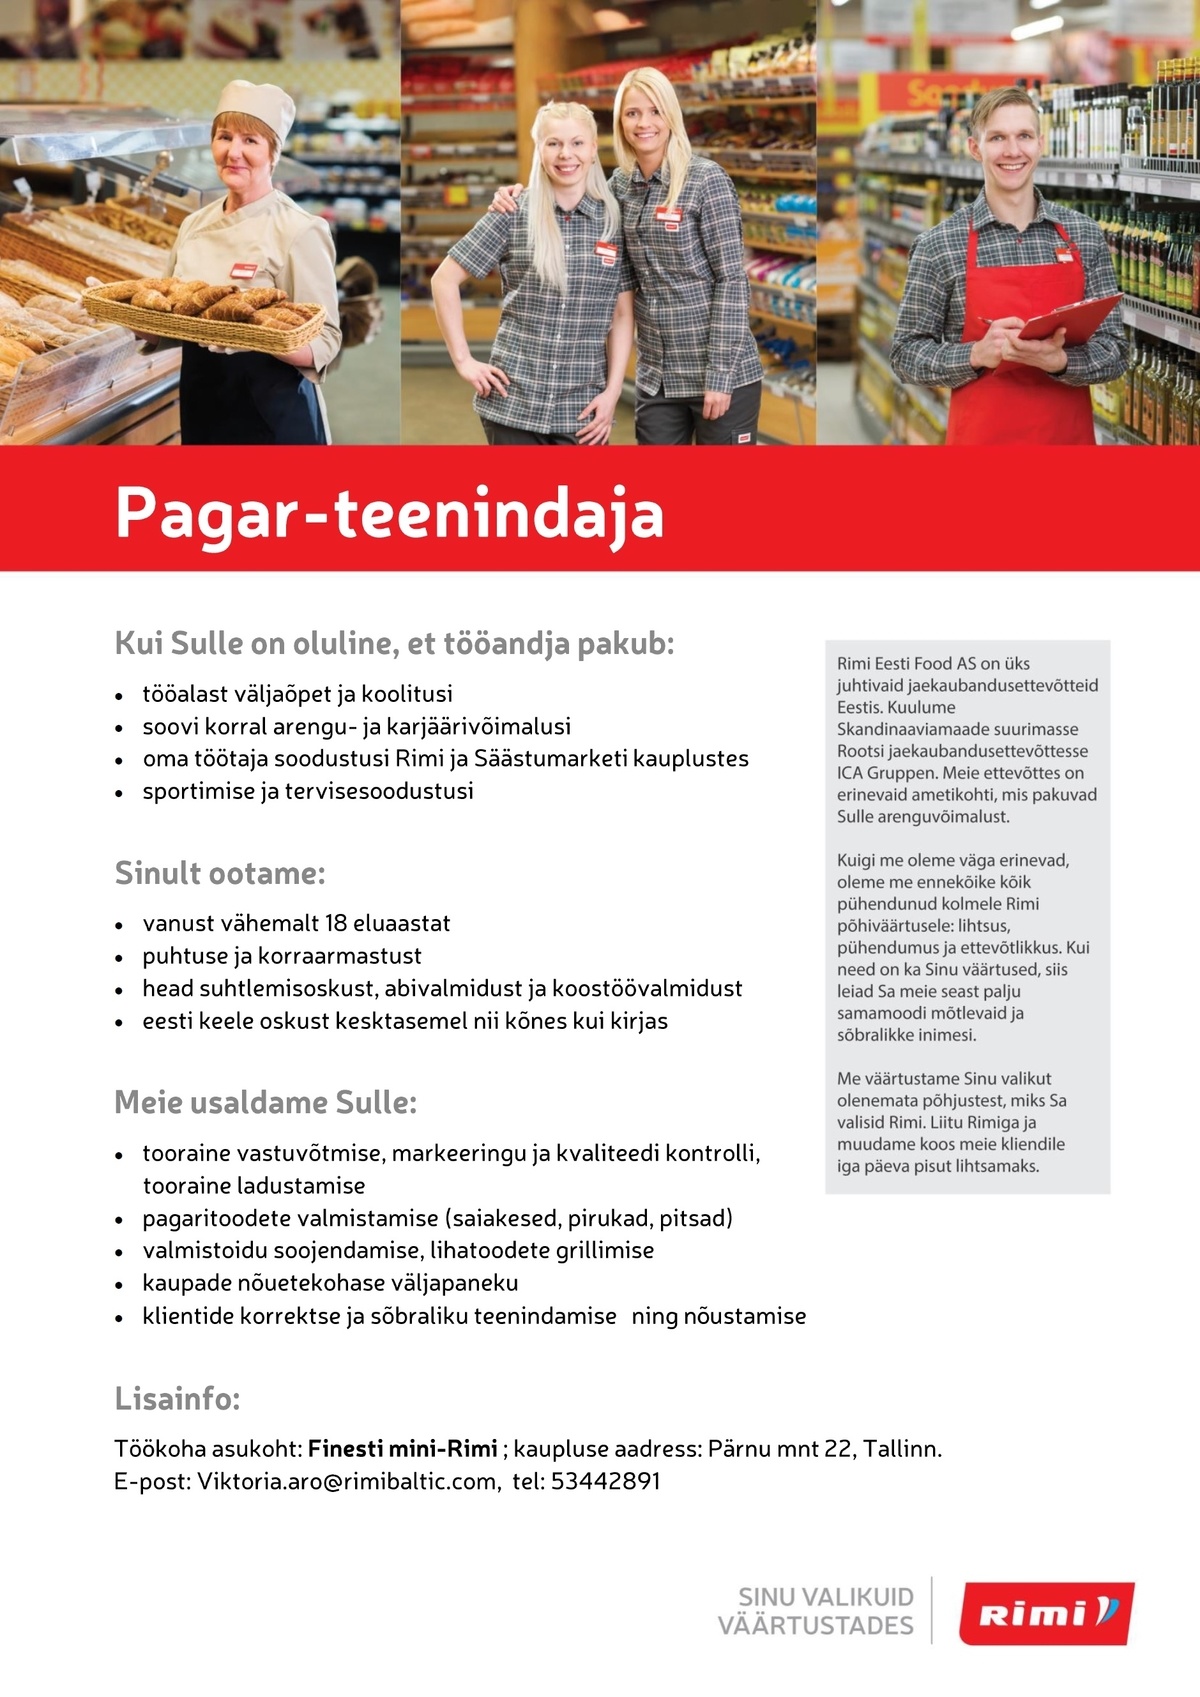 Rimi Eesti Food AS Pagar-teenindaja - uus Finest mini-Rimi